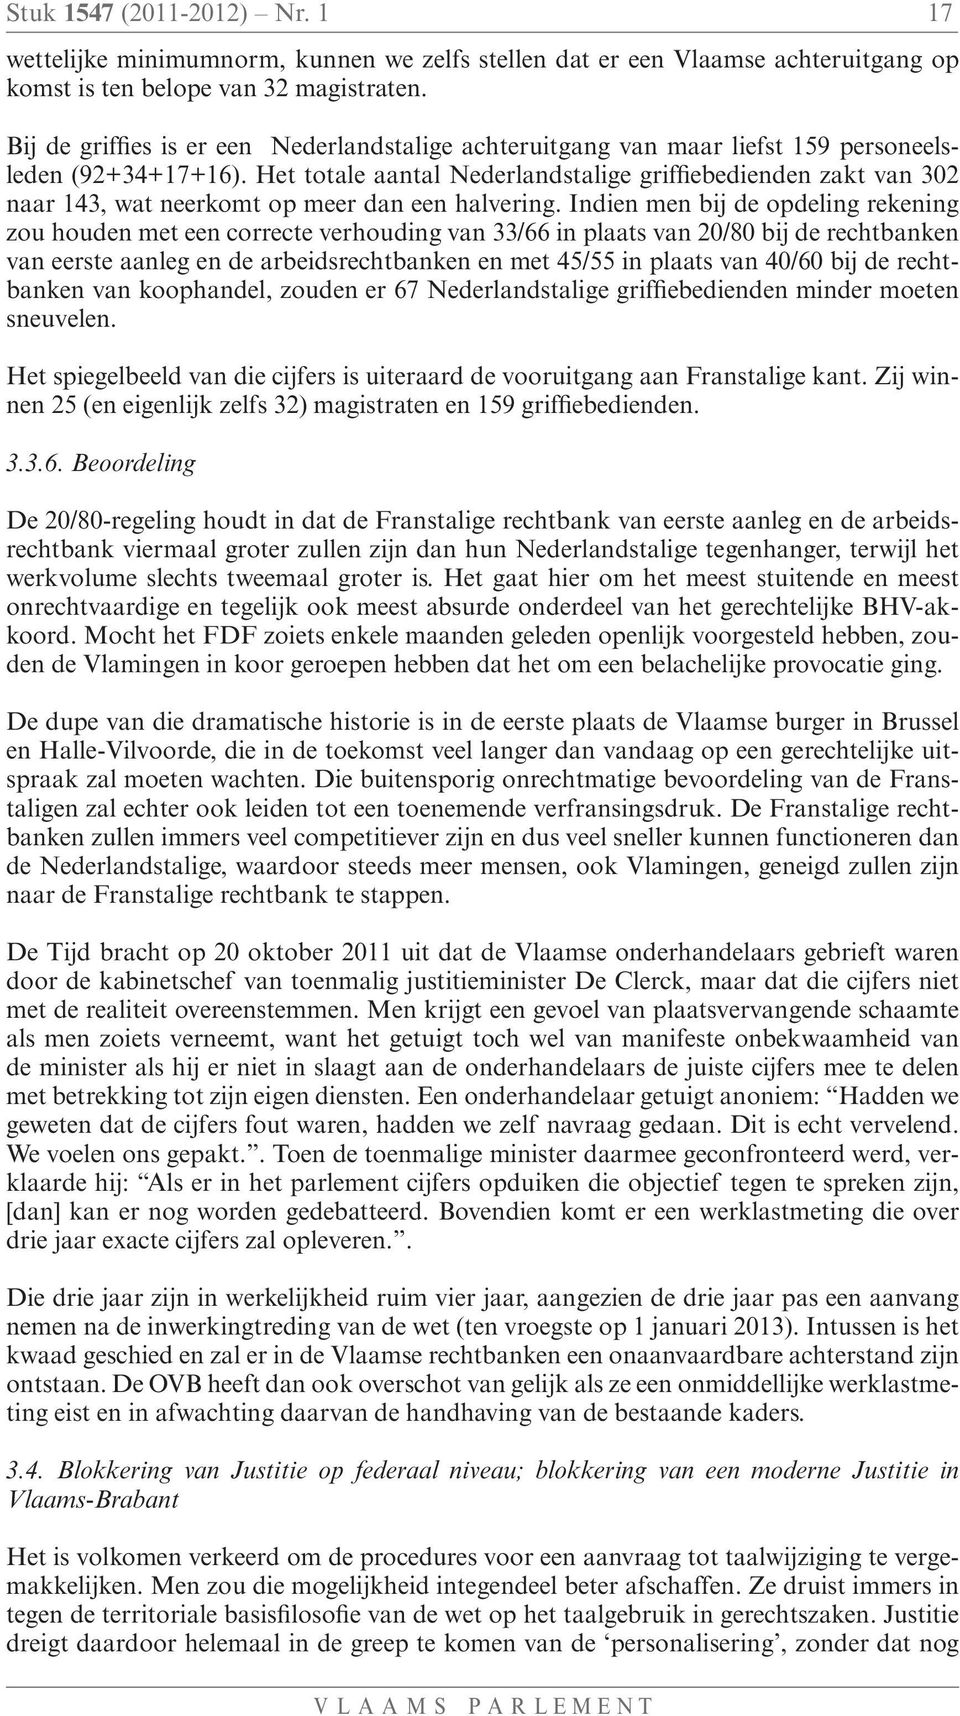 Het totale aantal Nederlandstalige griffiebedienden zakt van 302 naar 143, wat neerkomt op meer dan een halvering.